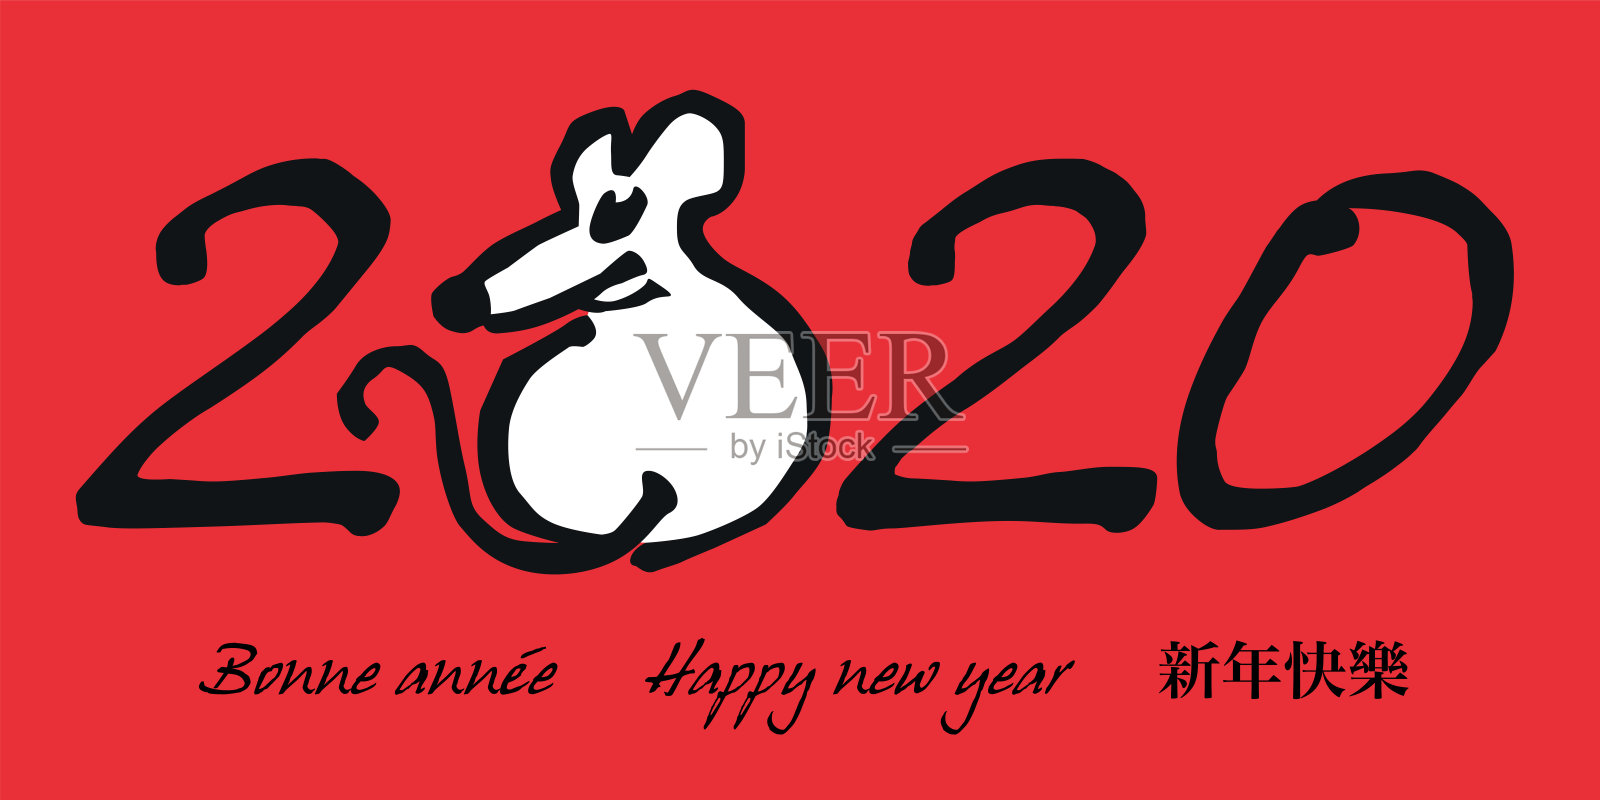 中国以老鼠为标志庆祝2020年新年。插画图片素材